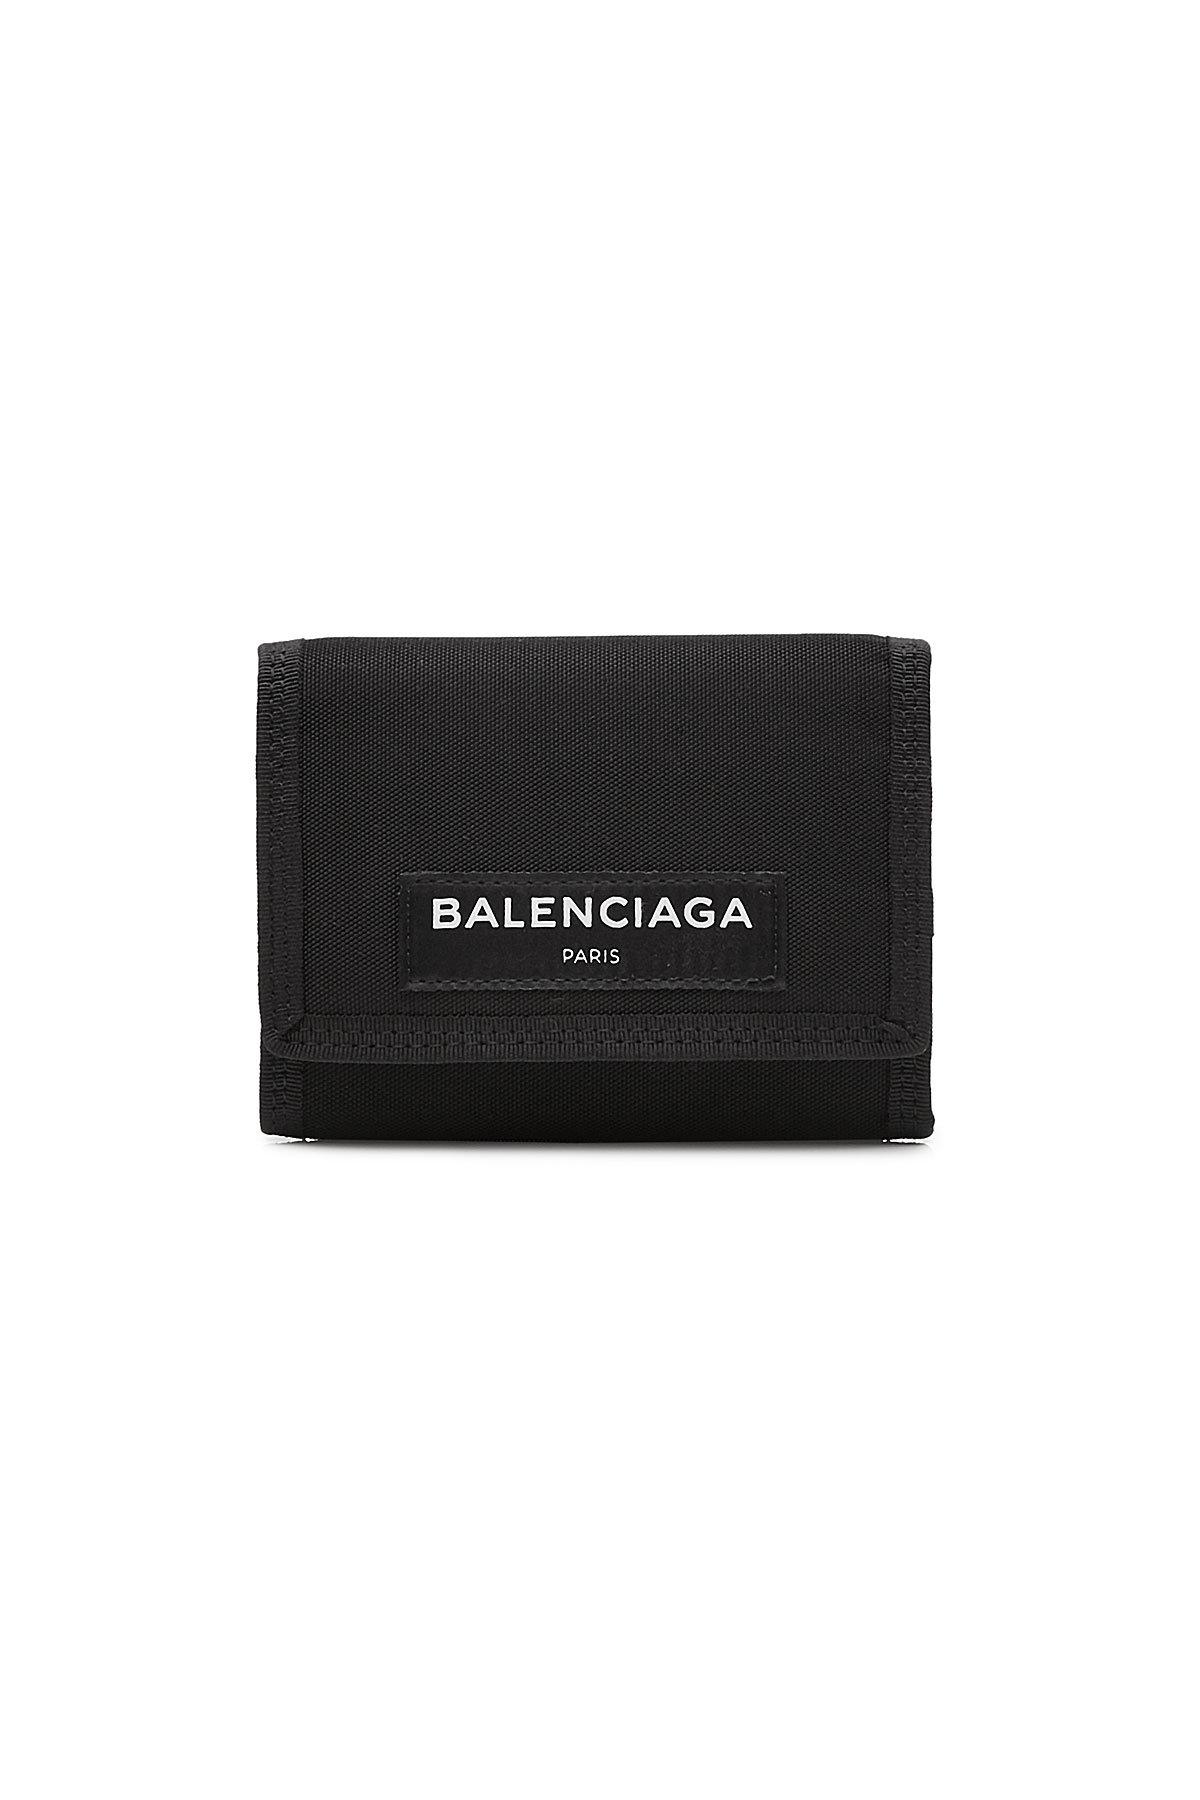 balenciaga wallet 2018